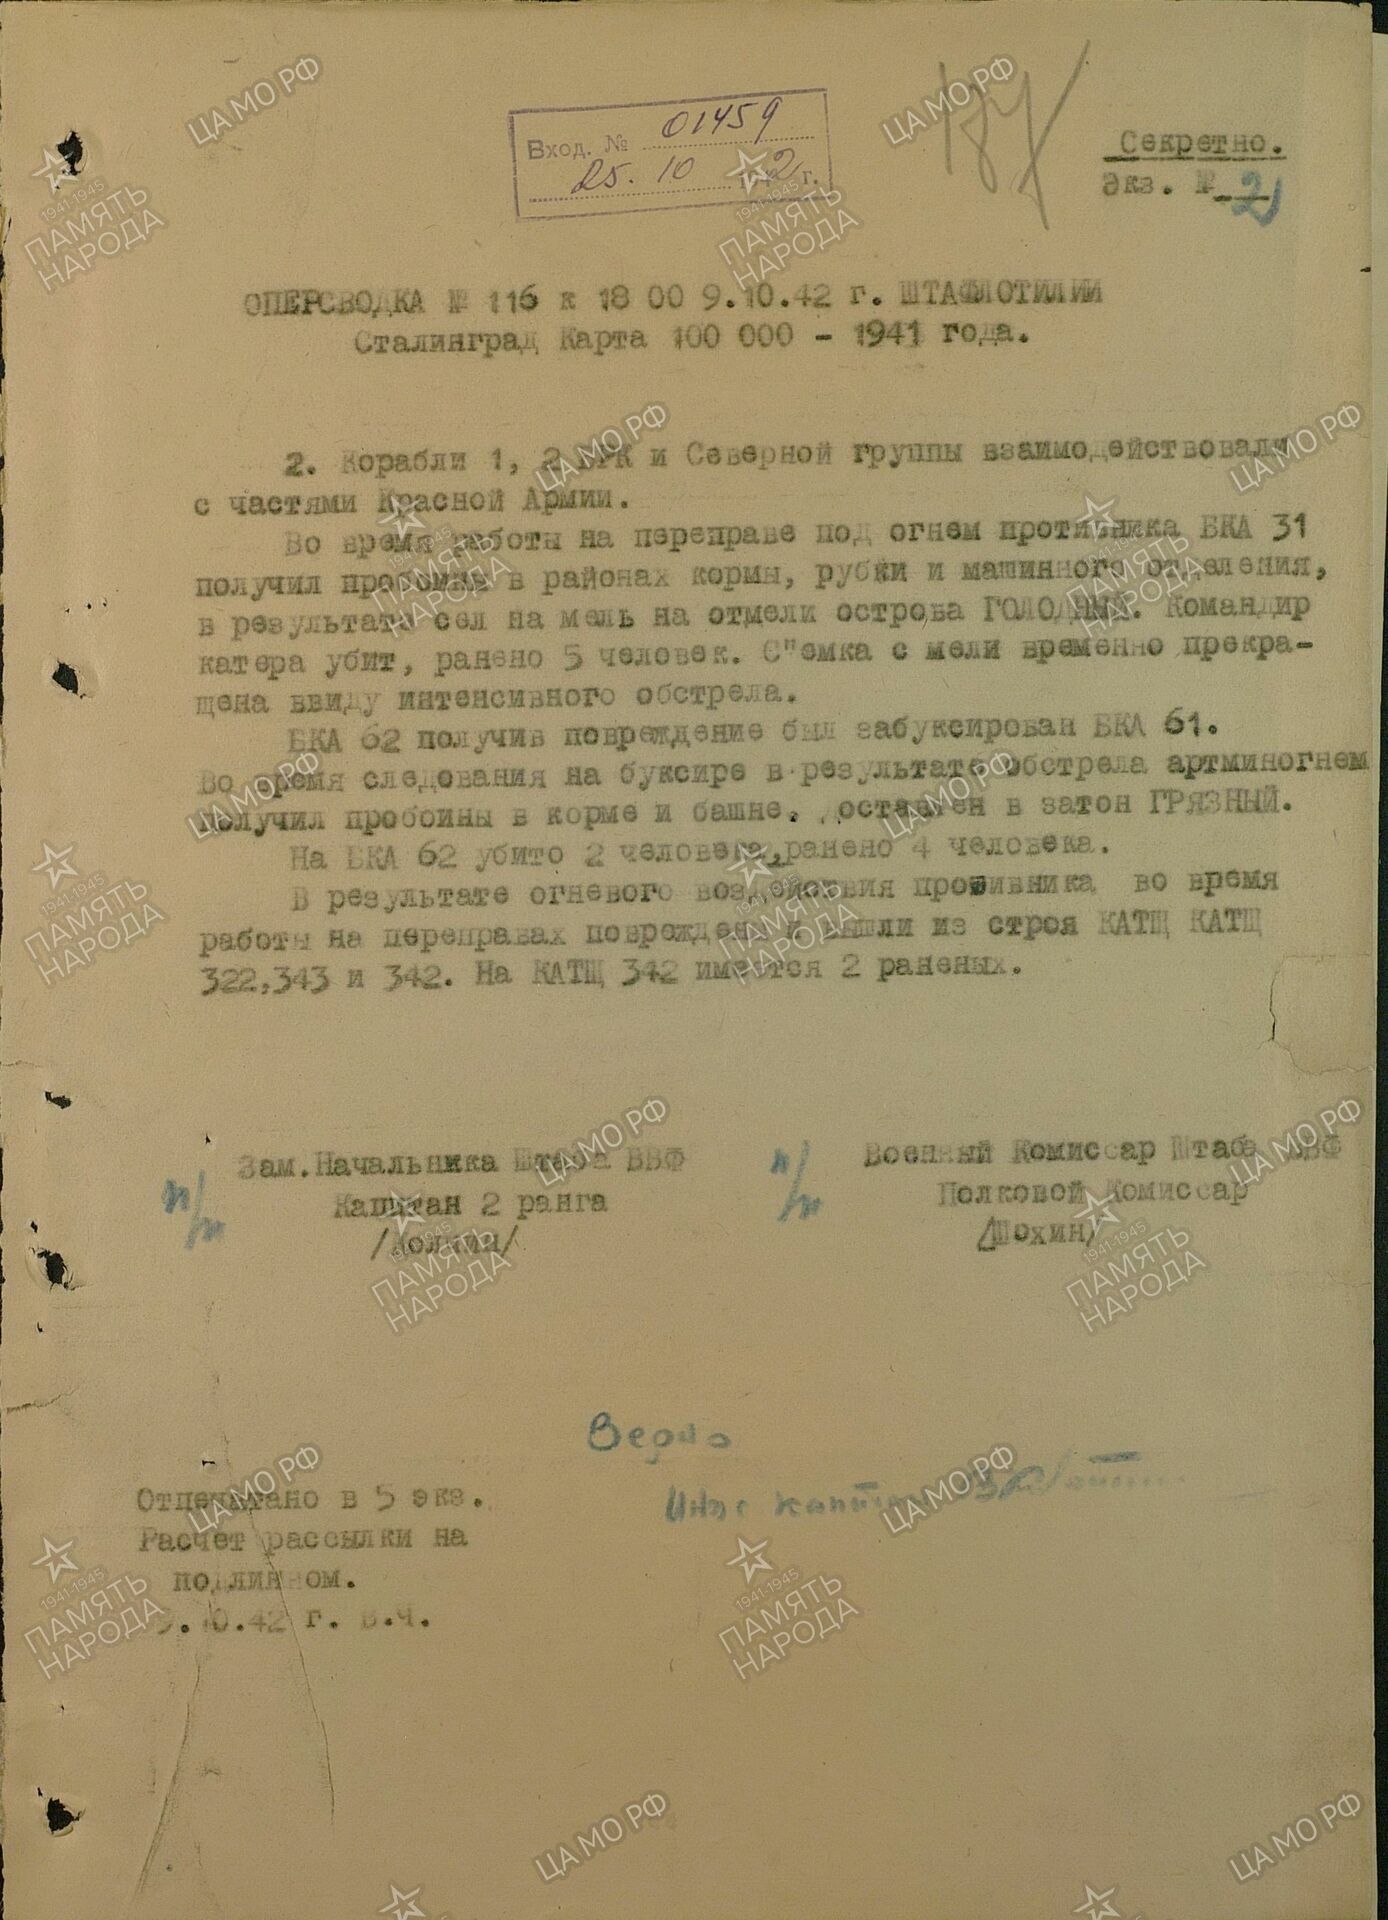 Оперсводка №115 к 18:00 9.10.1942 г., штаб флотилии, Сталинград